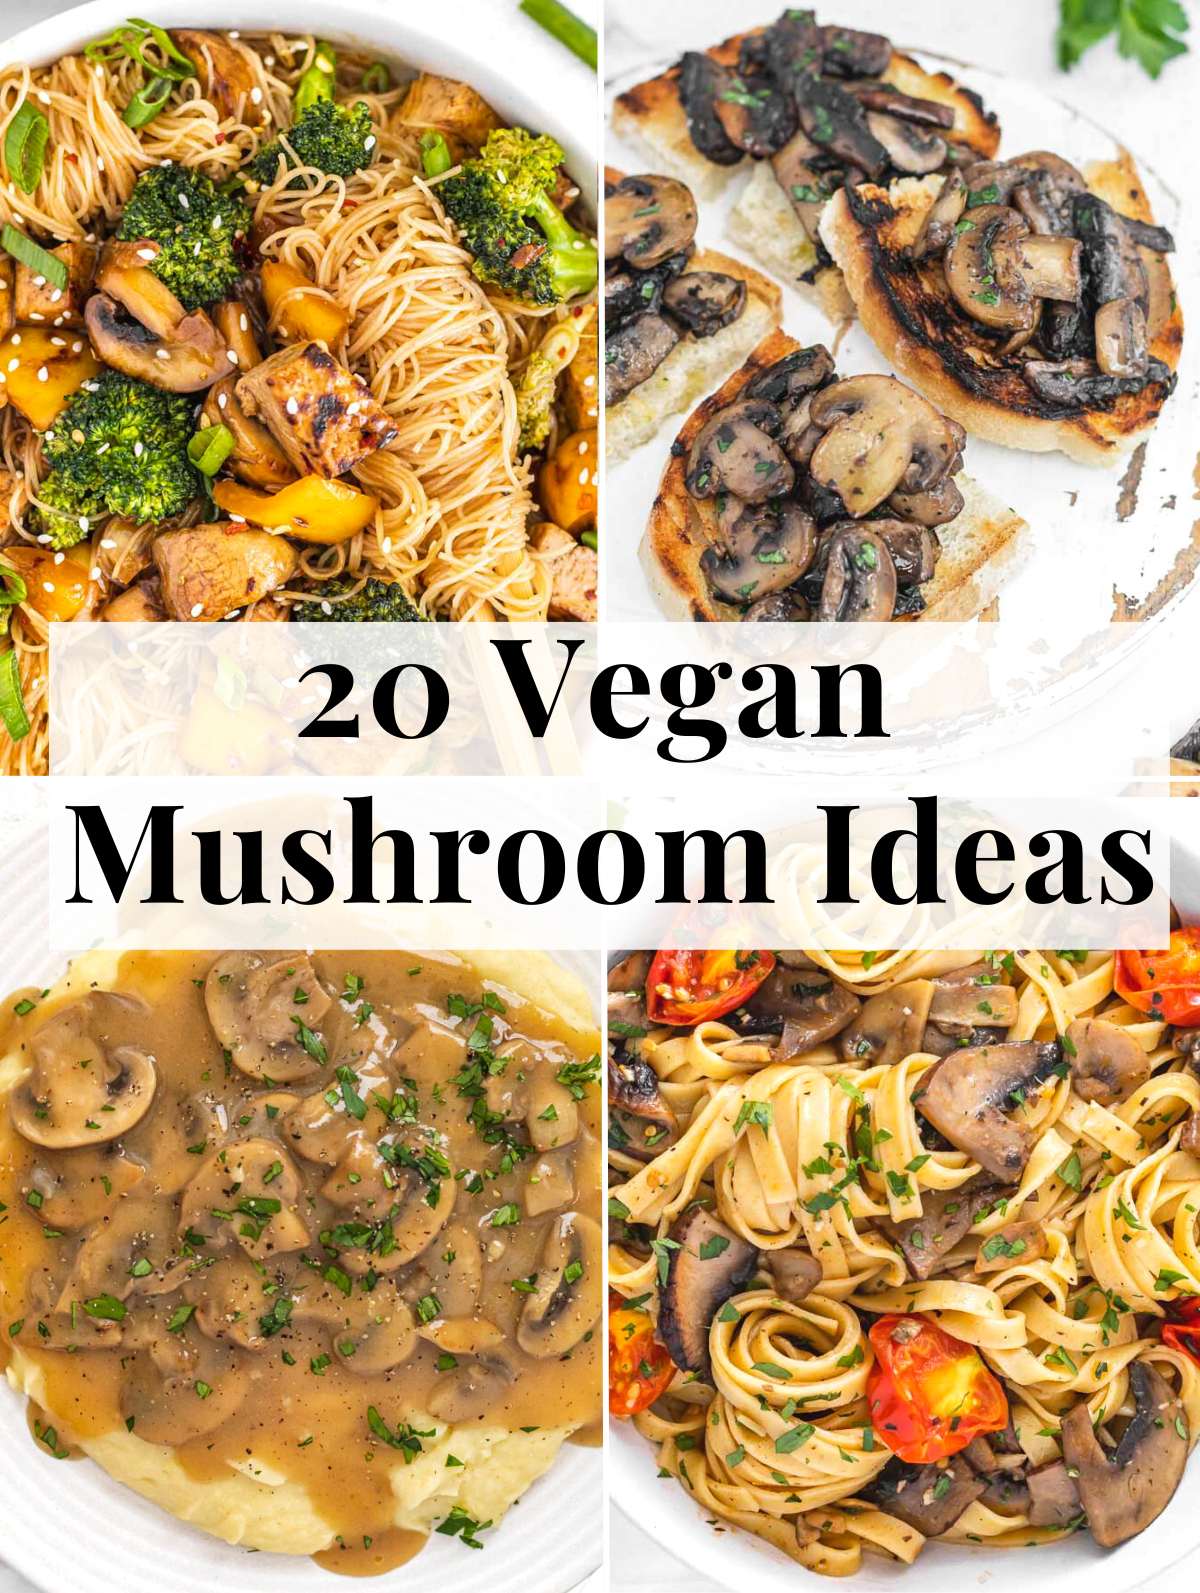 Vegan Mushroom Ideas for dinner and lunch